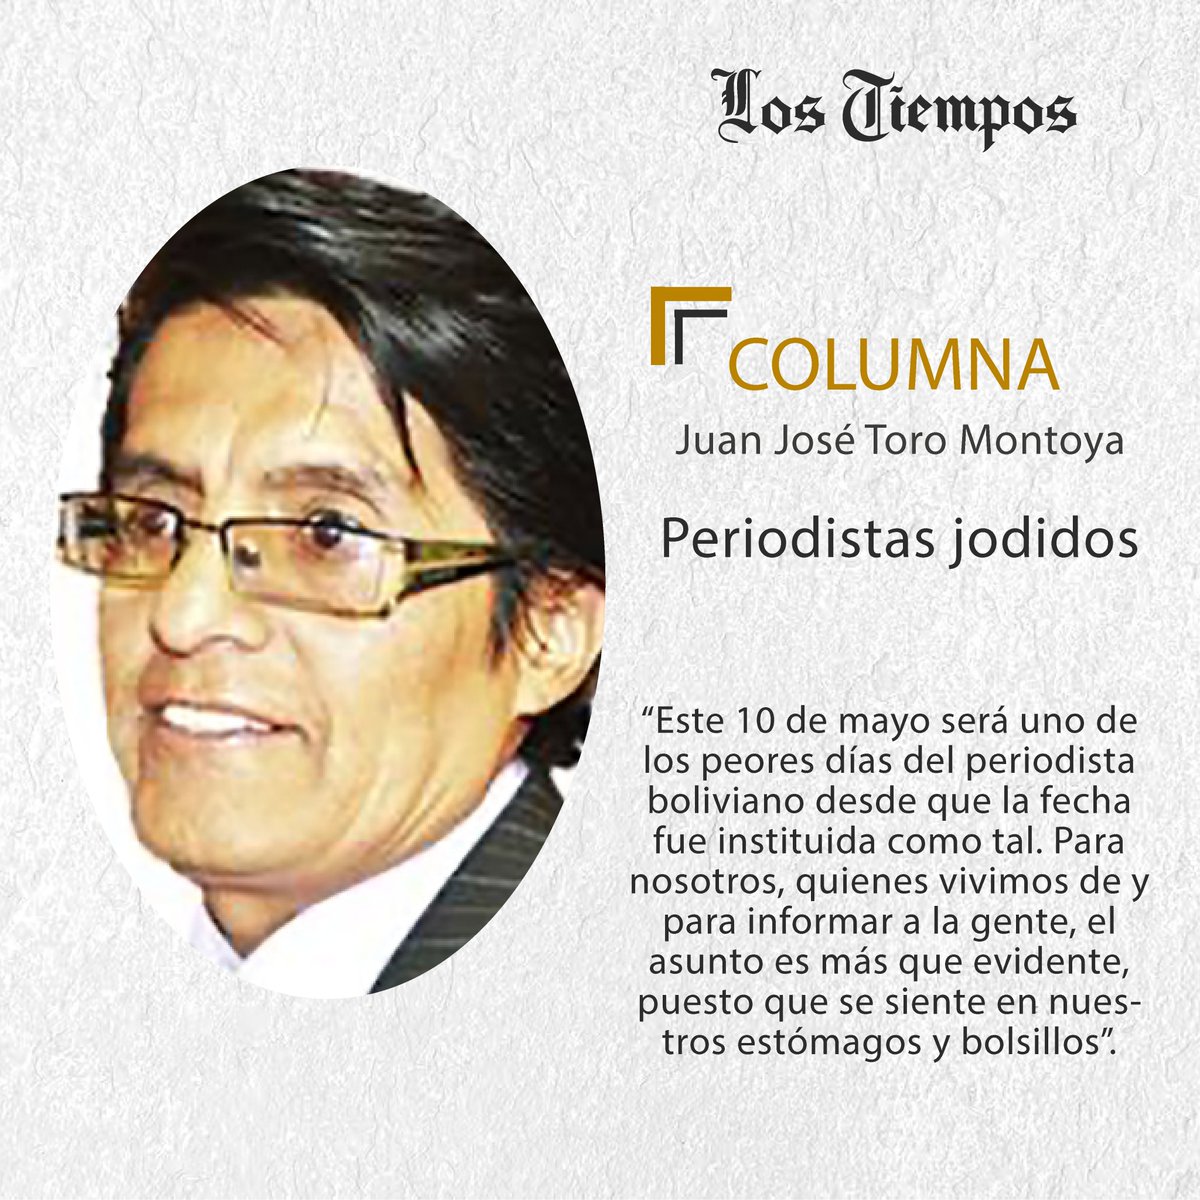 #LTColumna #Puntos de Vista
Lea la columna de Juan José Toro Montoya.
👉 tinyurl.com/37bhpzdz